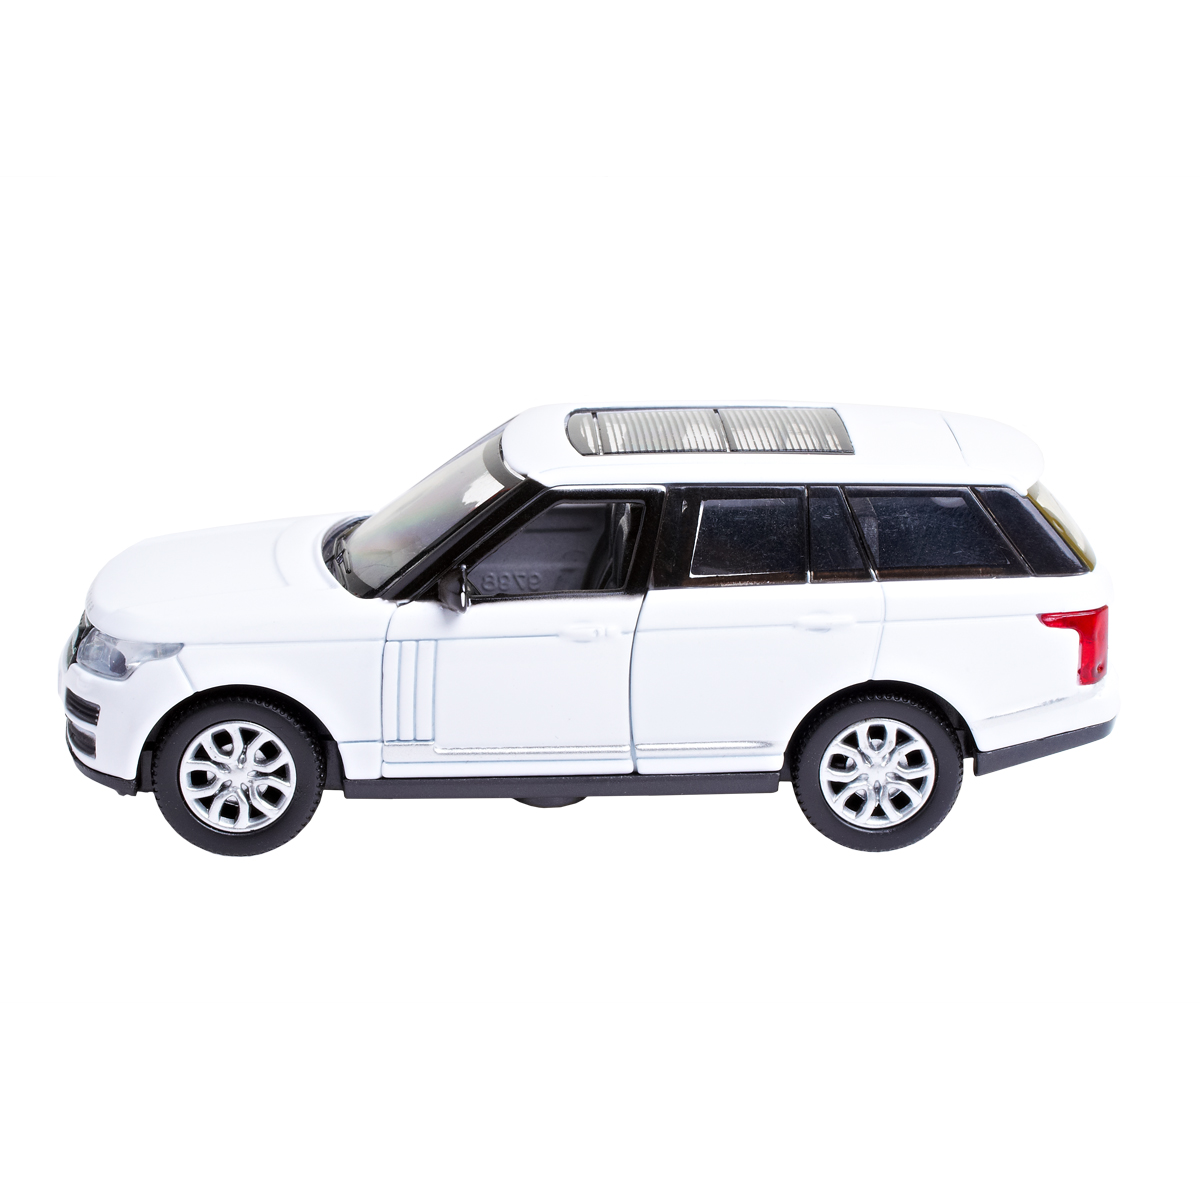 Автомодель Technopark Range Rover Vogue, 1:32, білий (VOGUE-WT) - фото 2